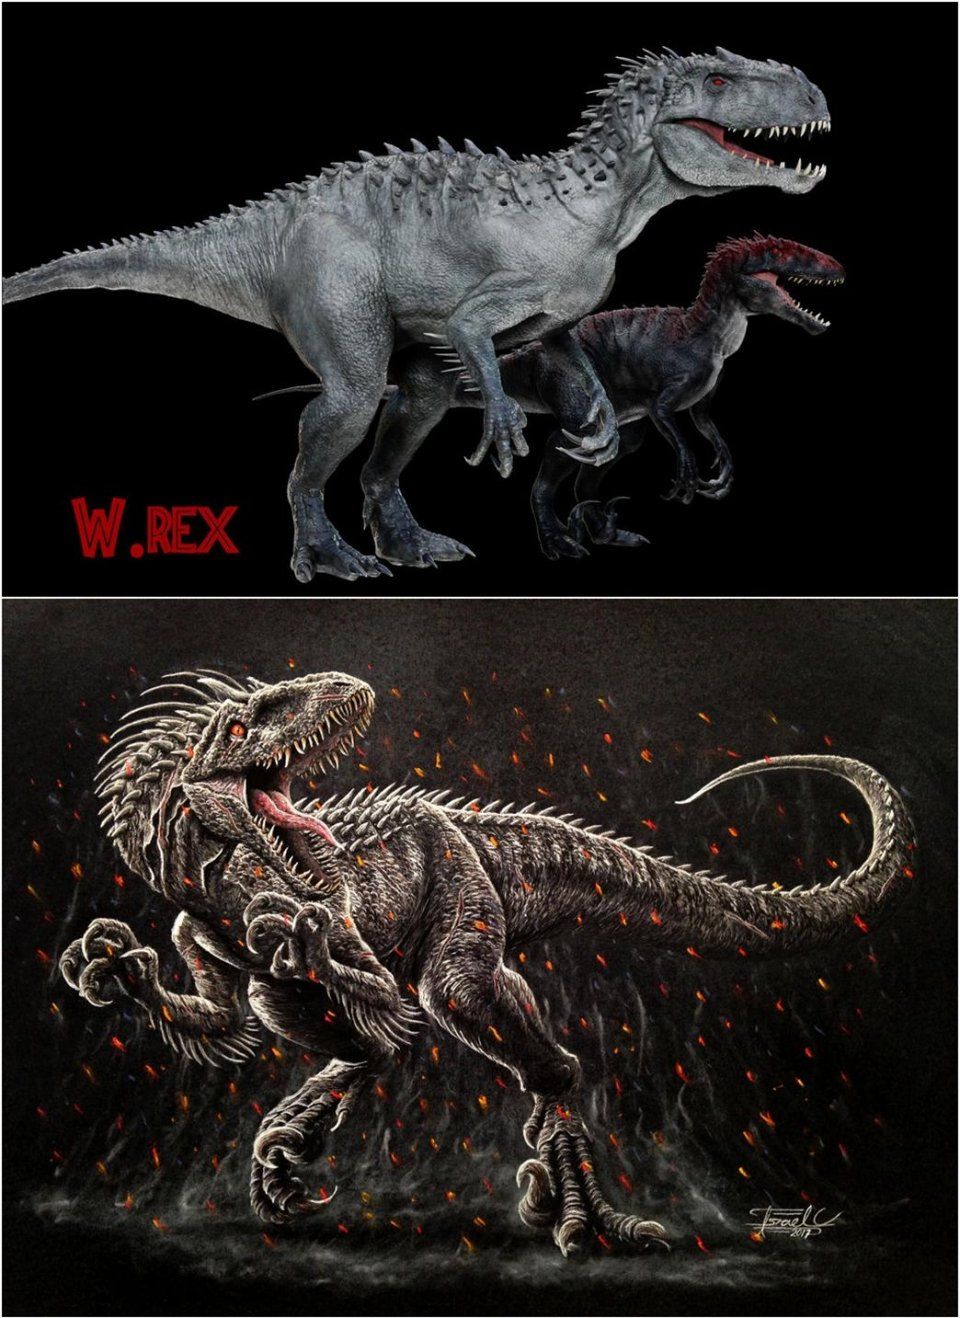 艺术家设计的变异迅猛龙的概念造型图及其与暴虐霸王龙的体型对比